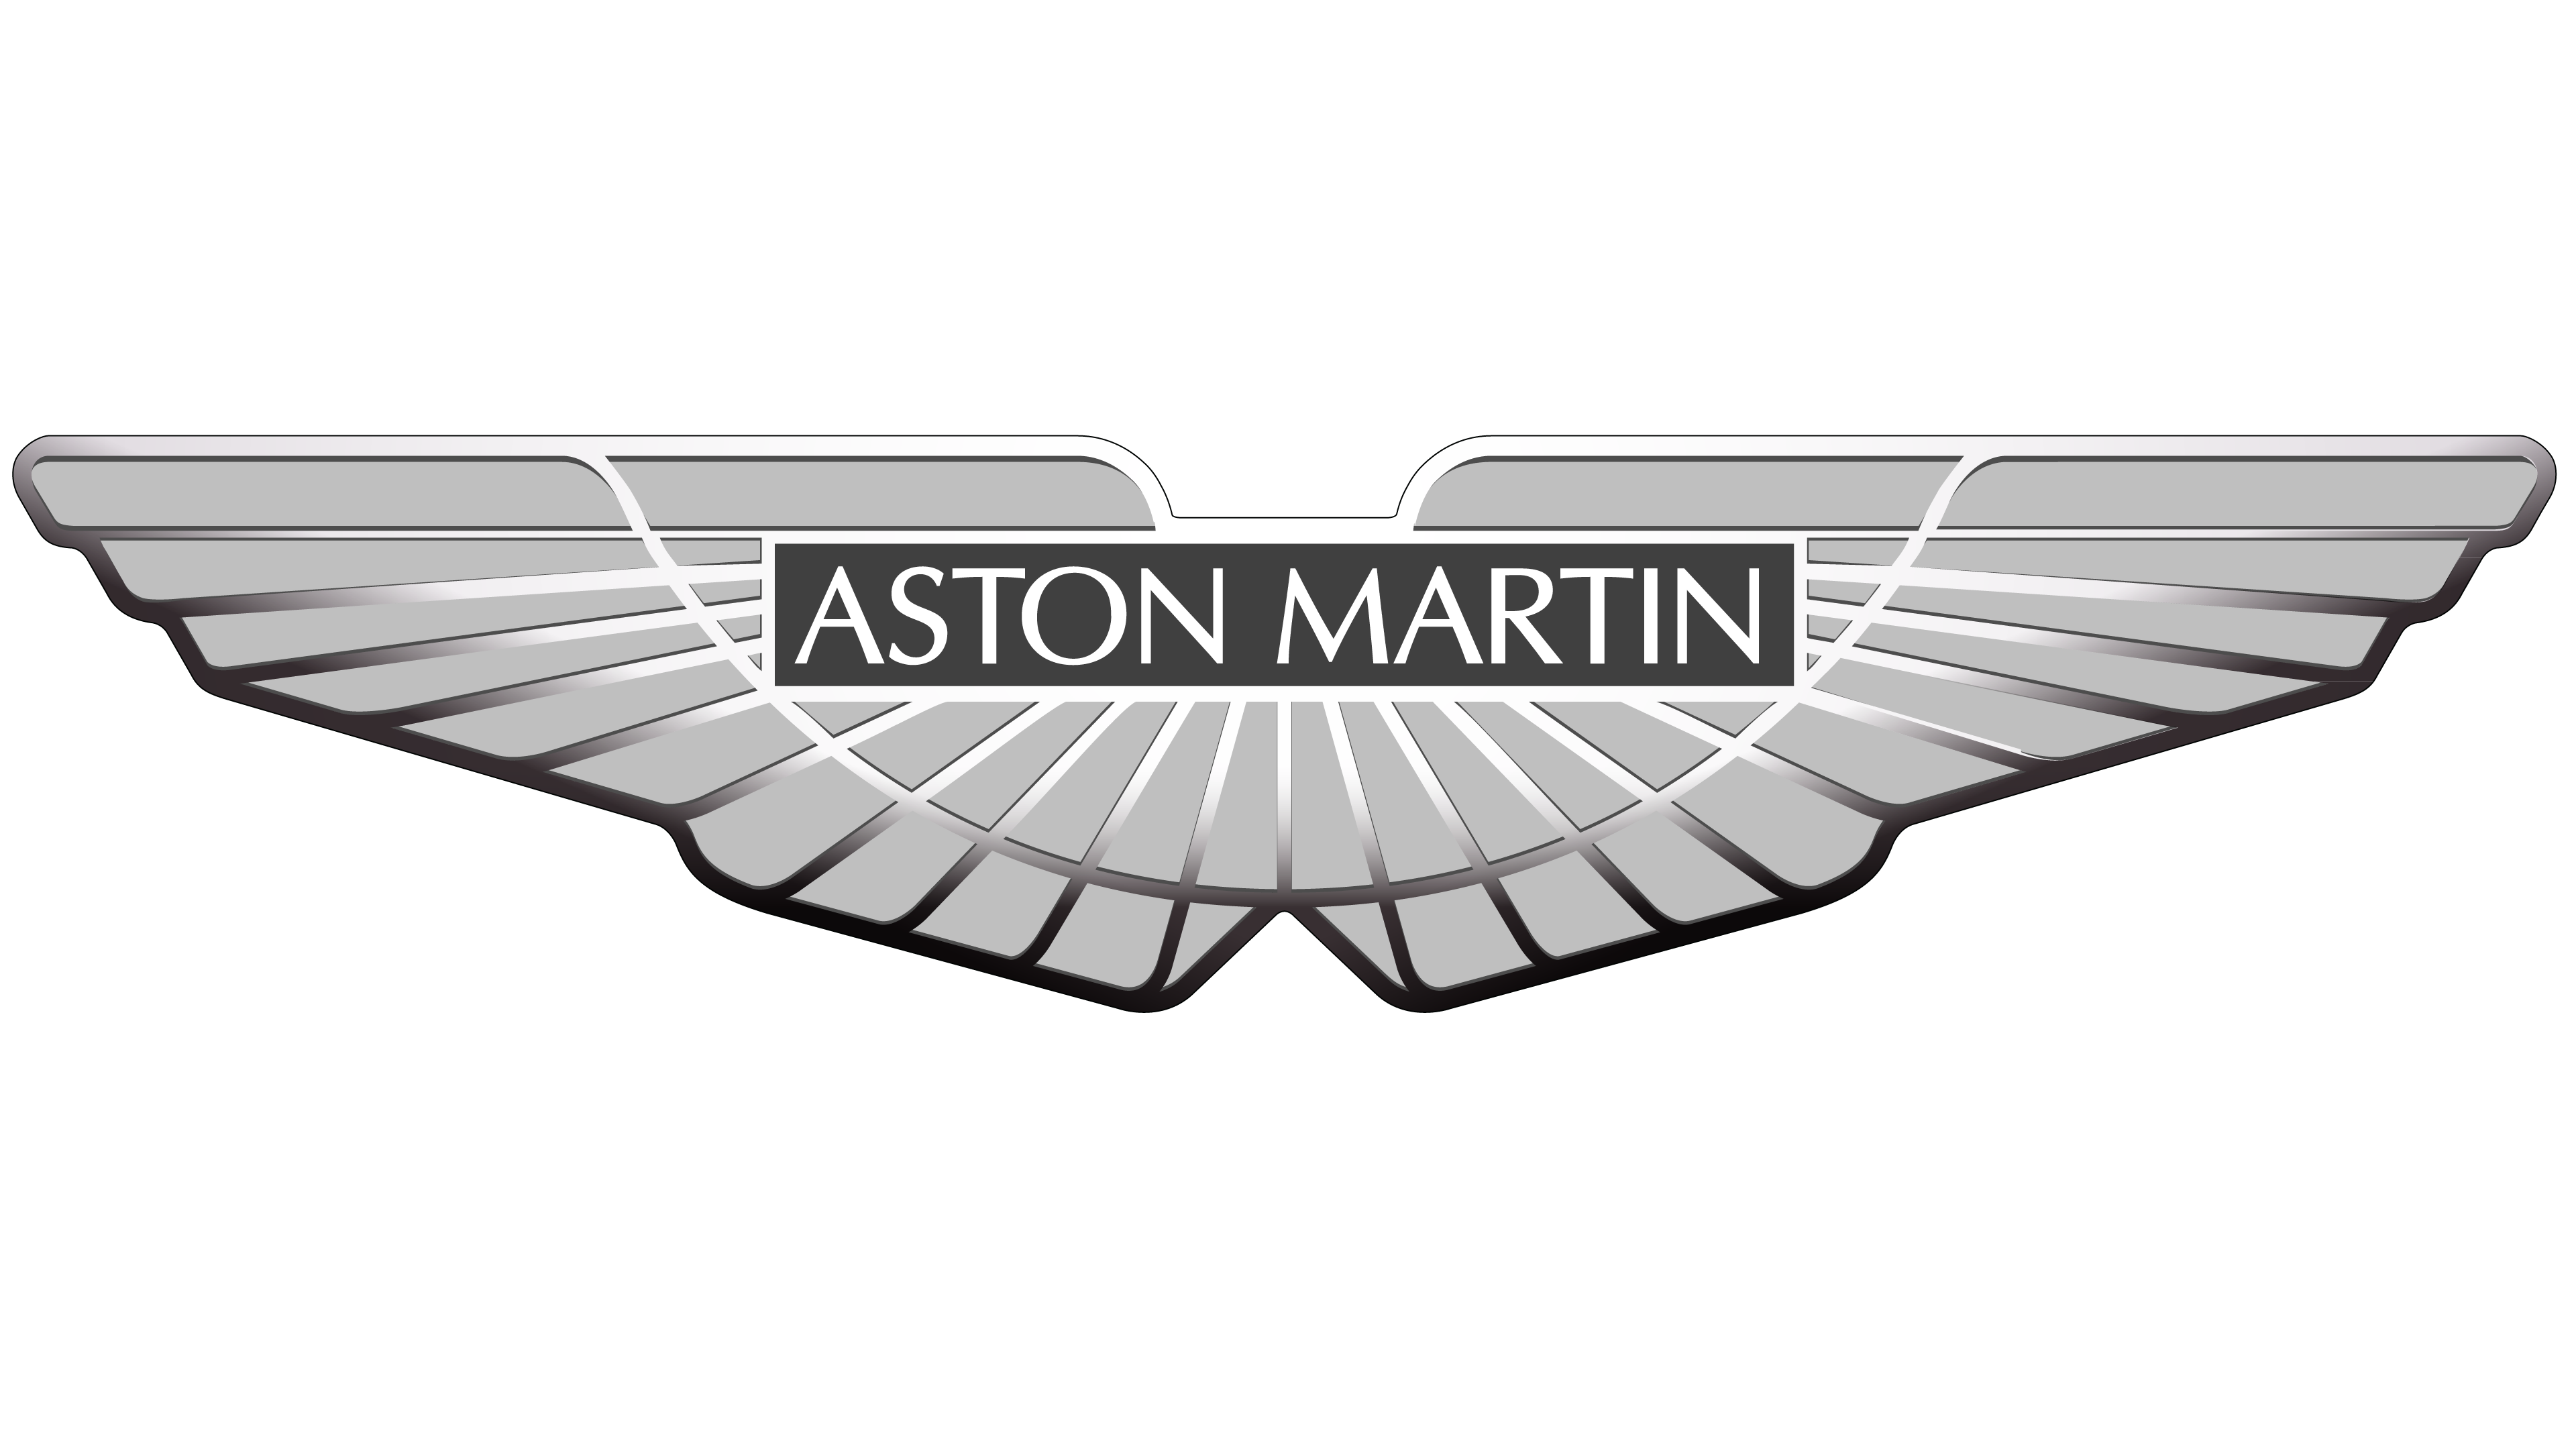 Direkt zur Aston Martin Webseite